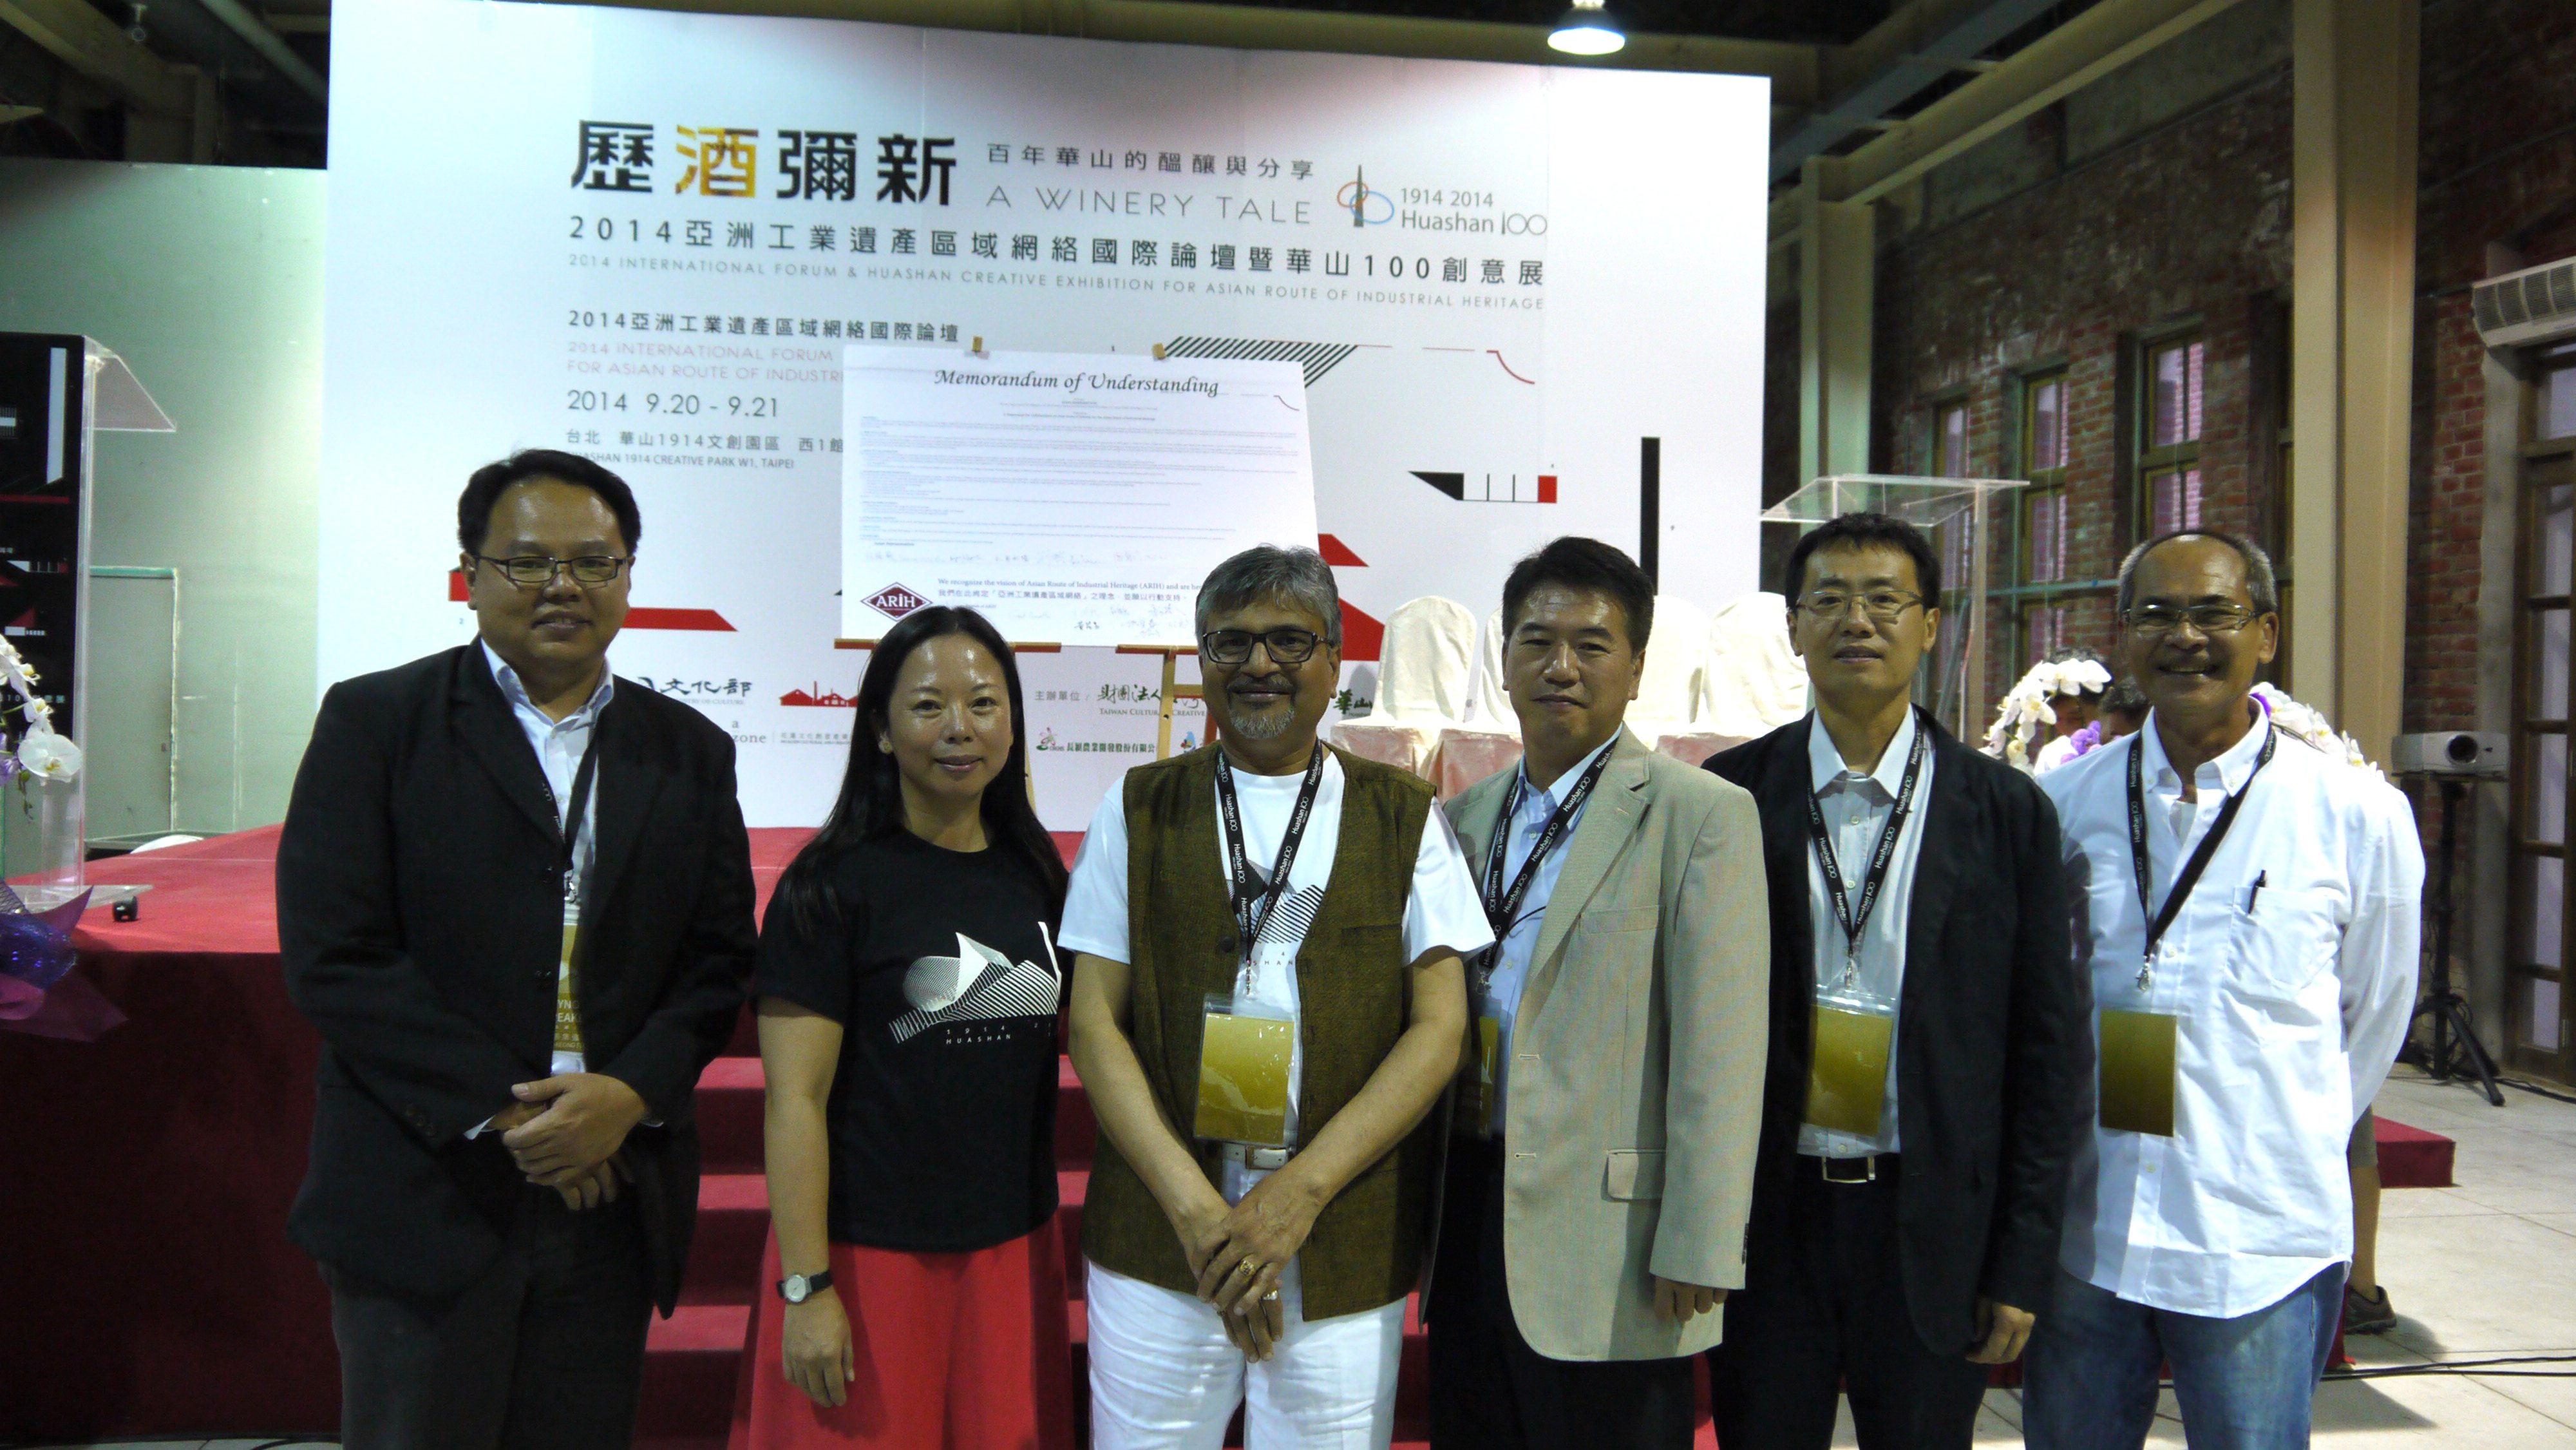 2014-亞洲工業遺產保存國際論壇暨華山 100 創意展